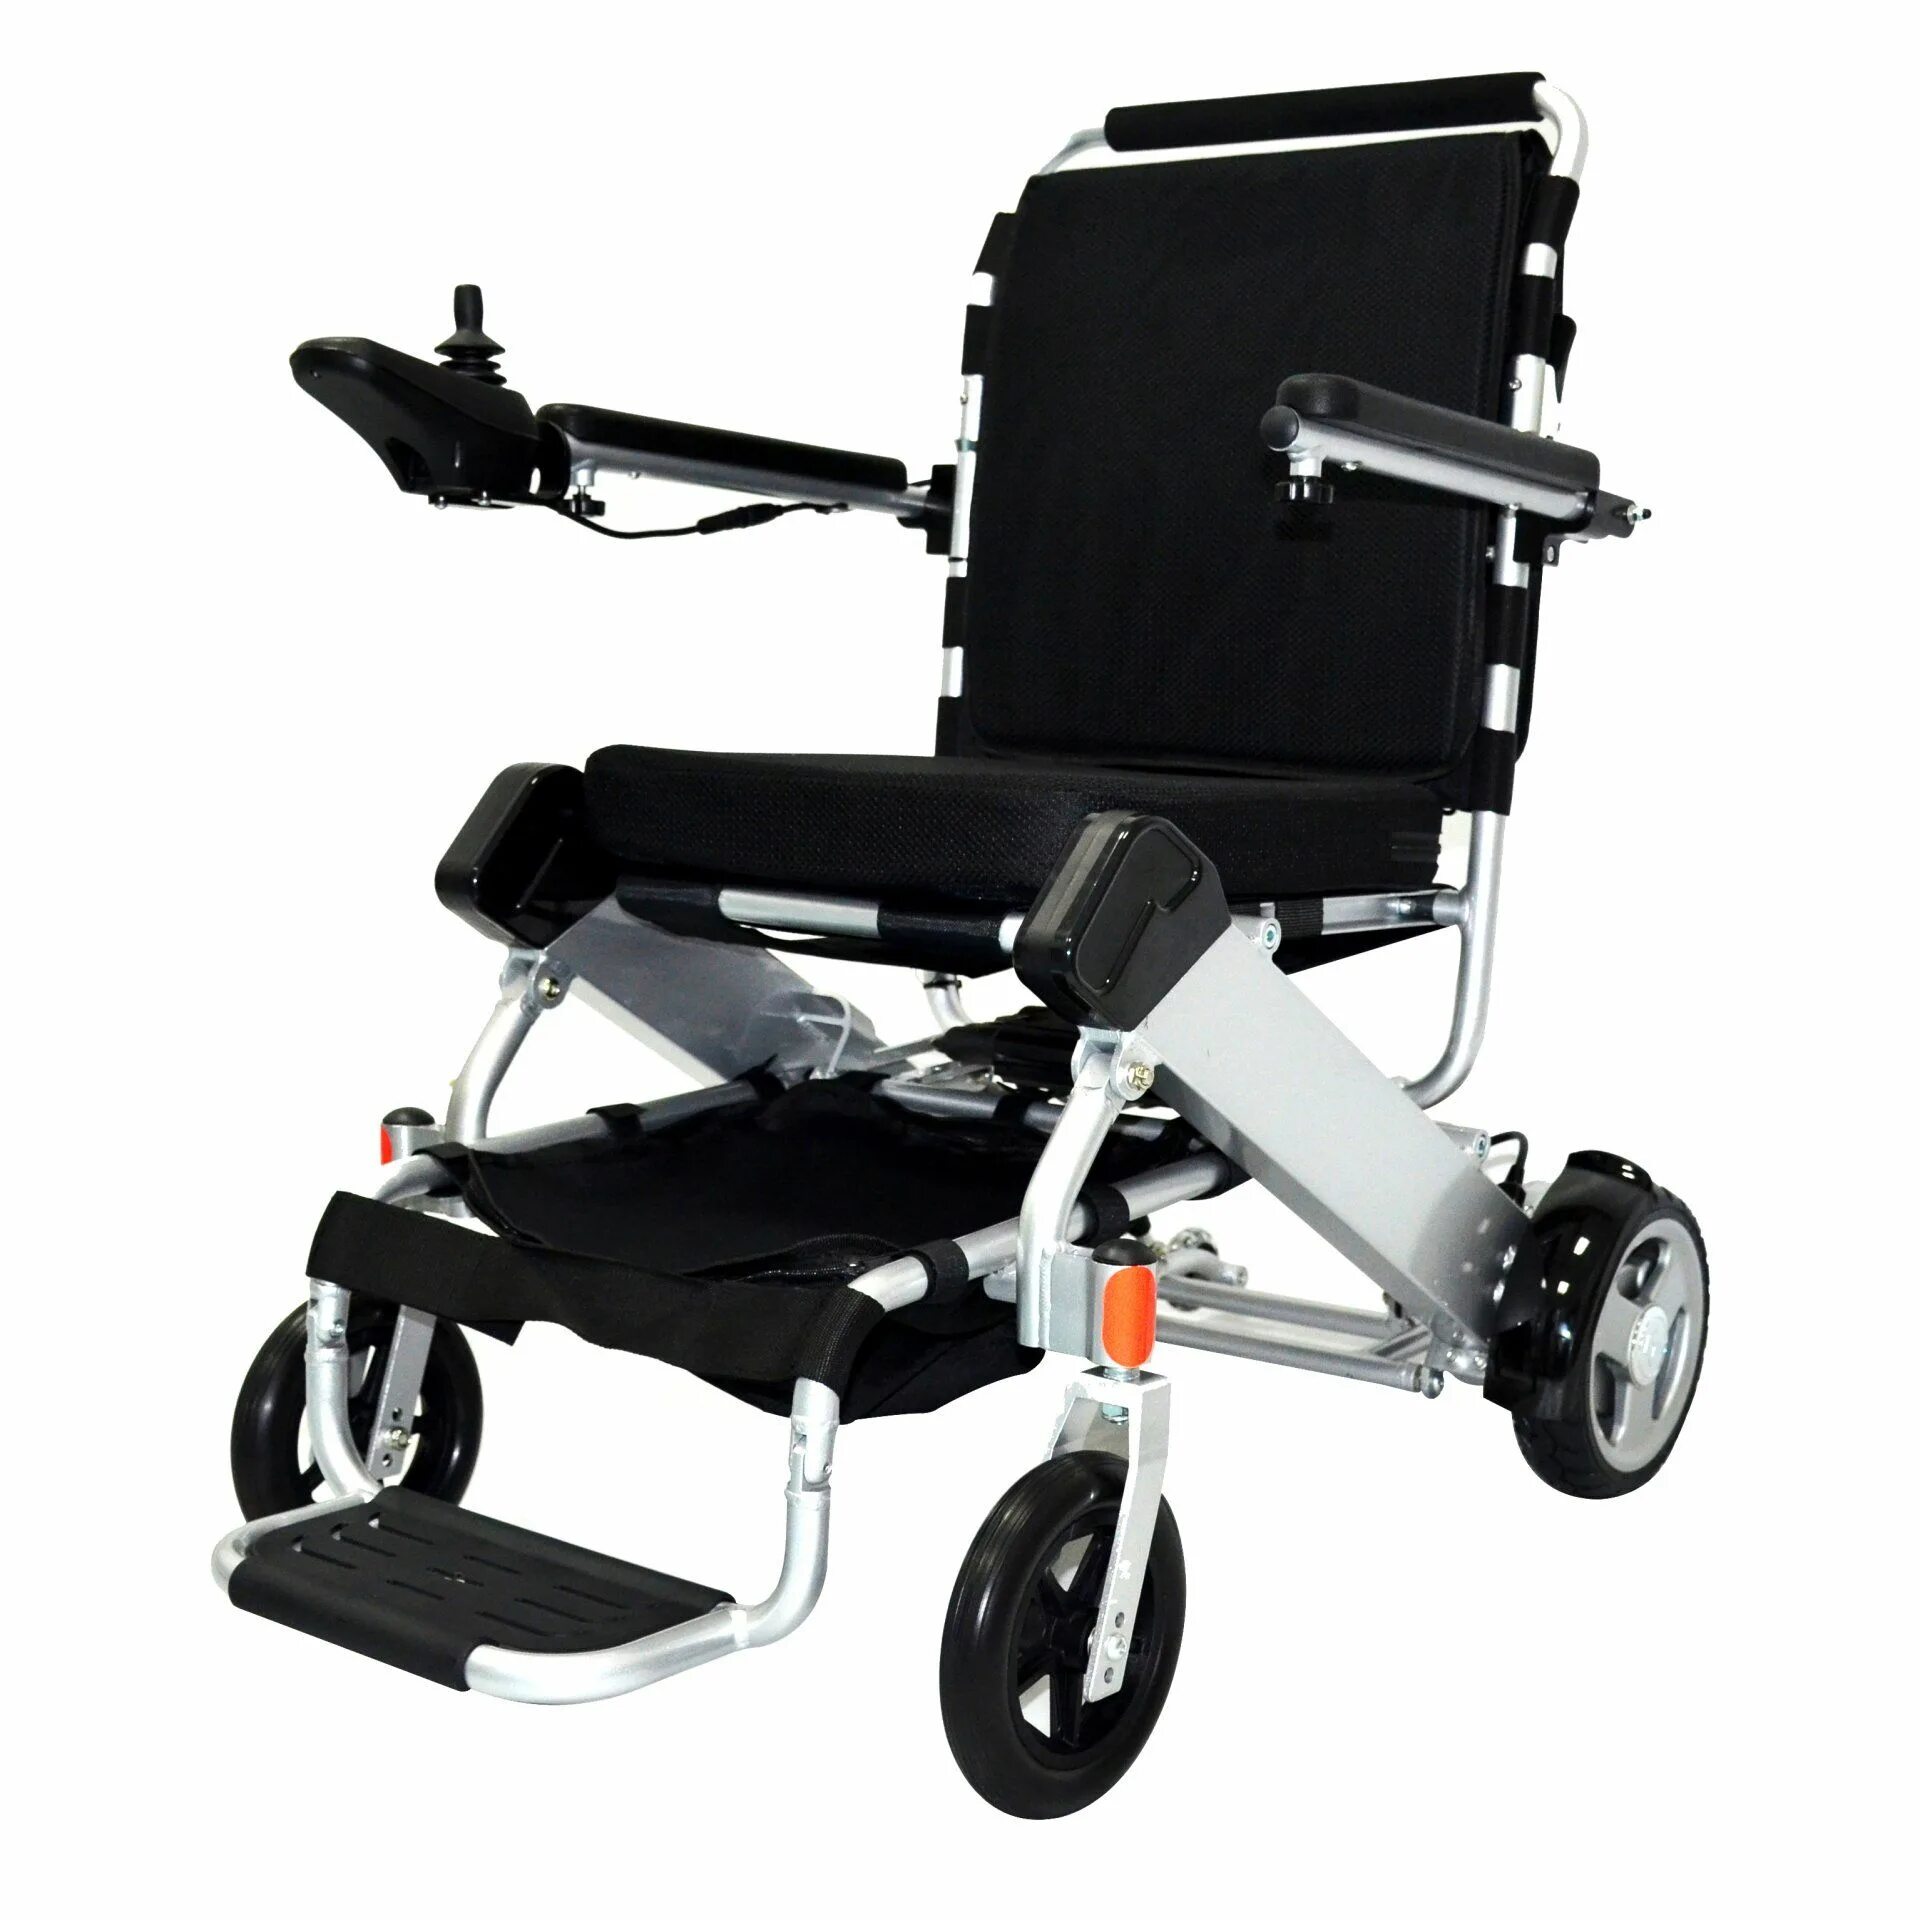 Электрическая коляска купить. МТ 40 800w инвалидная коляска с электроприводом. Складная электрическая инвалидная коляска вс-еа8000. Электроколяска для инвалидов 200 кг. Складная электрическая инвалидная коляска BC-EA 8000.